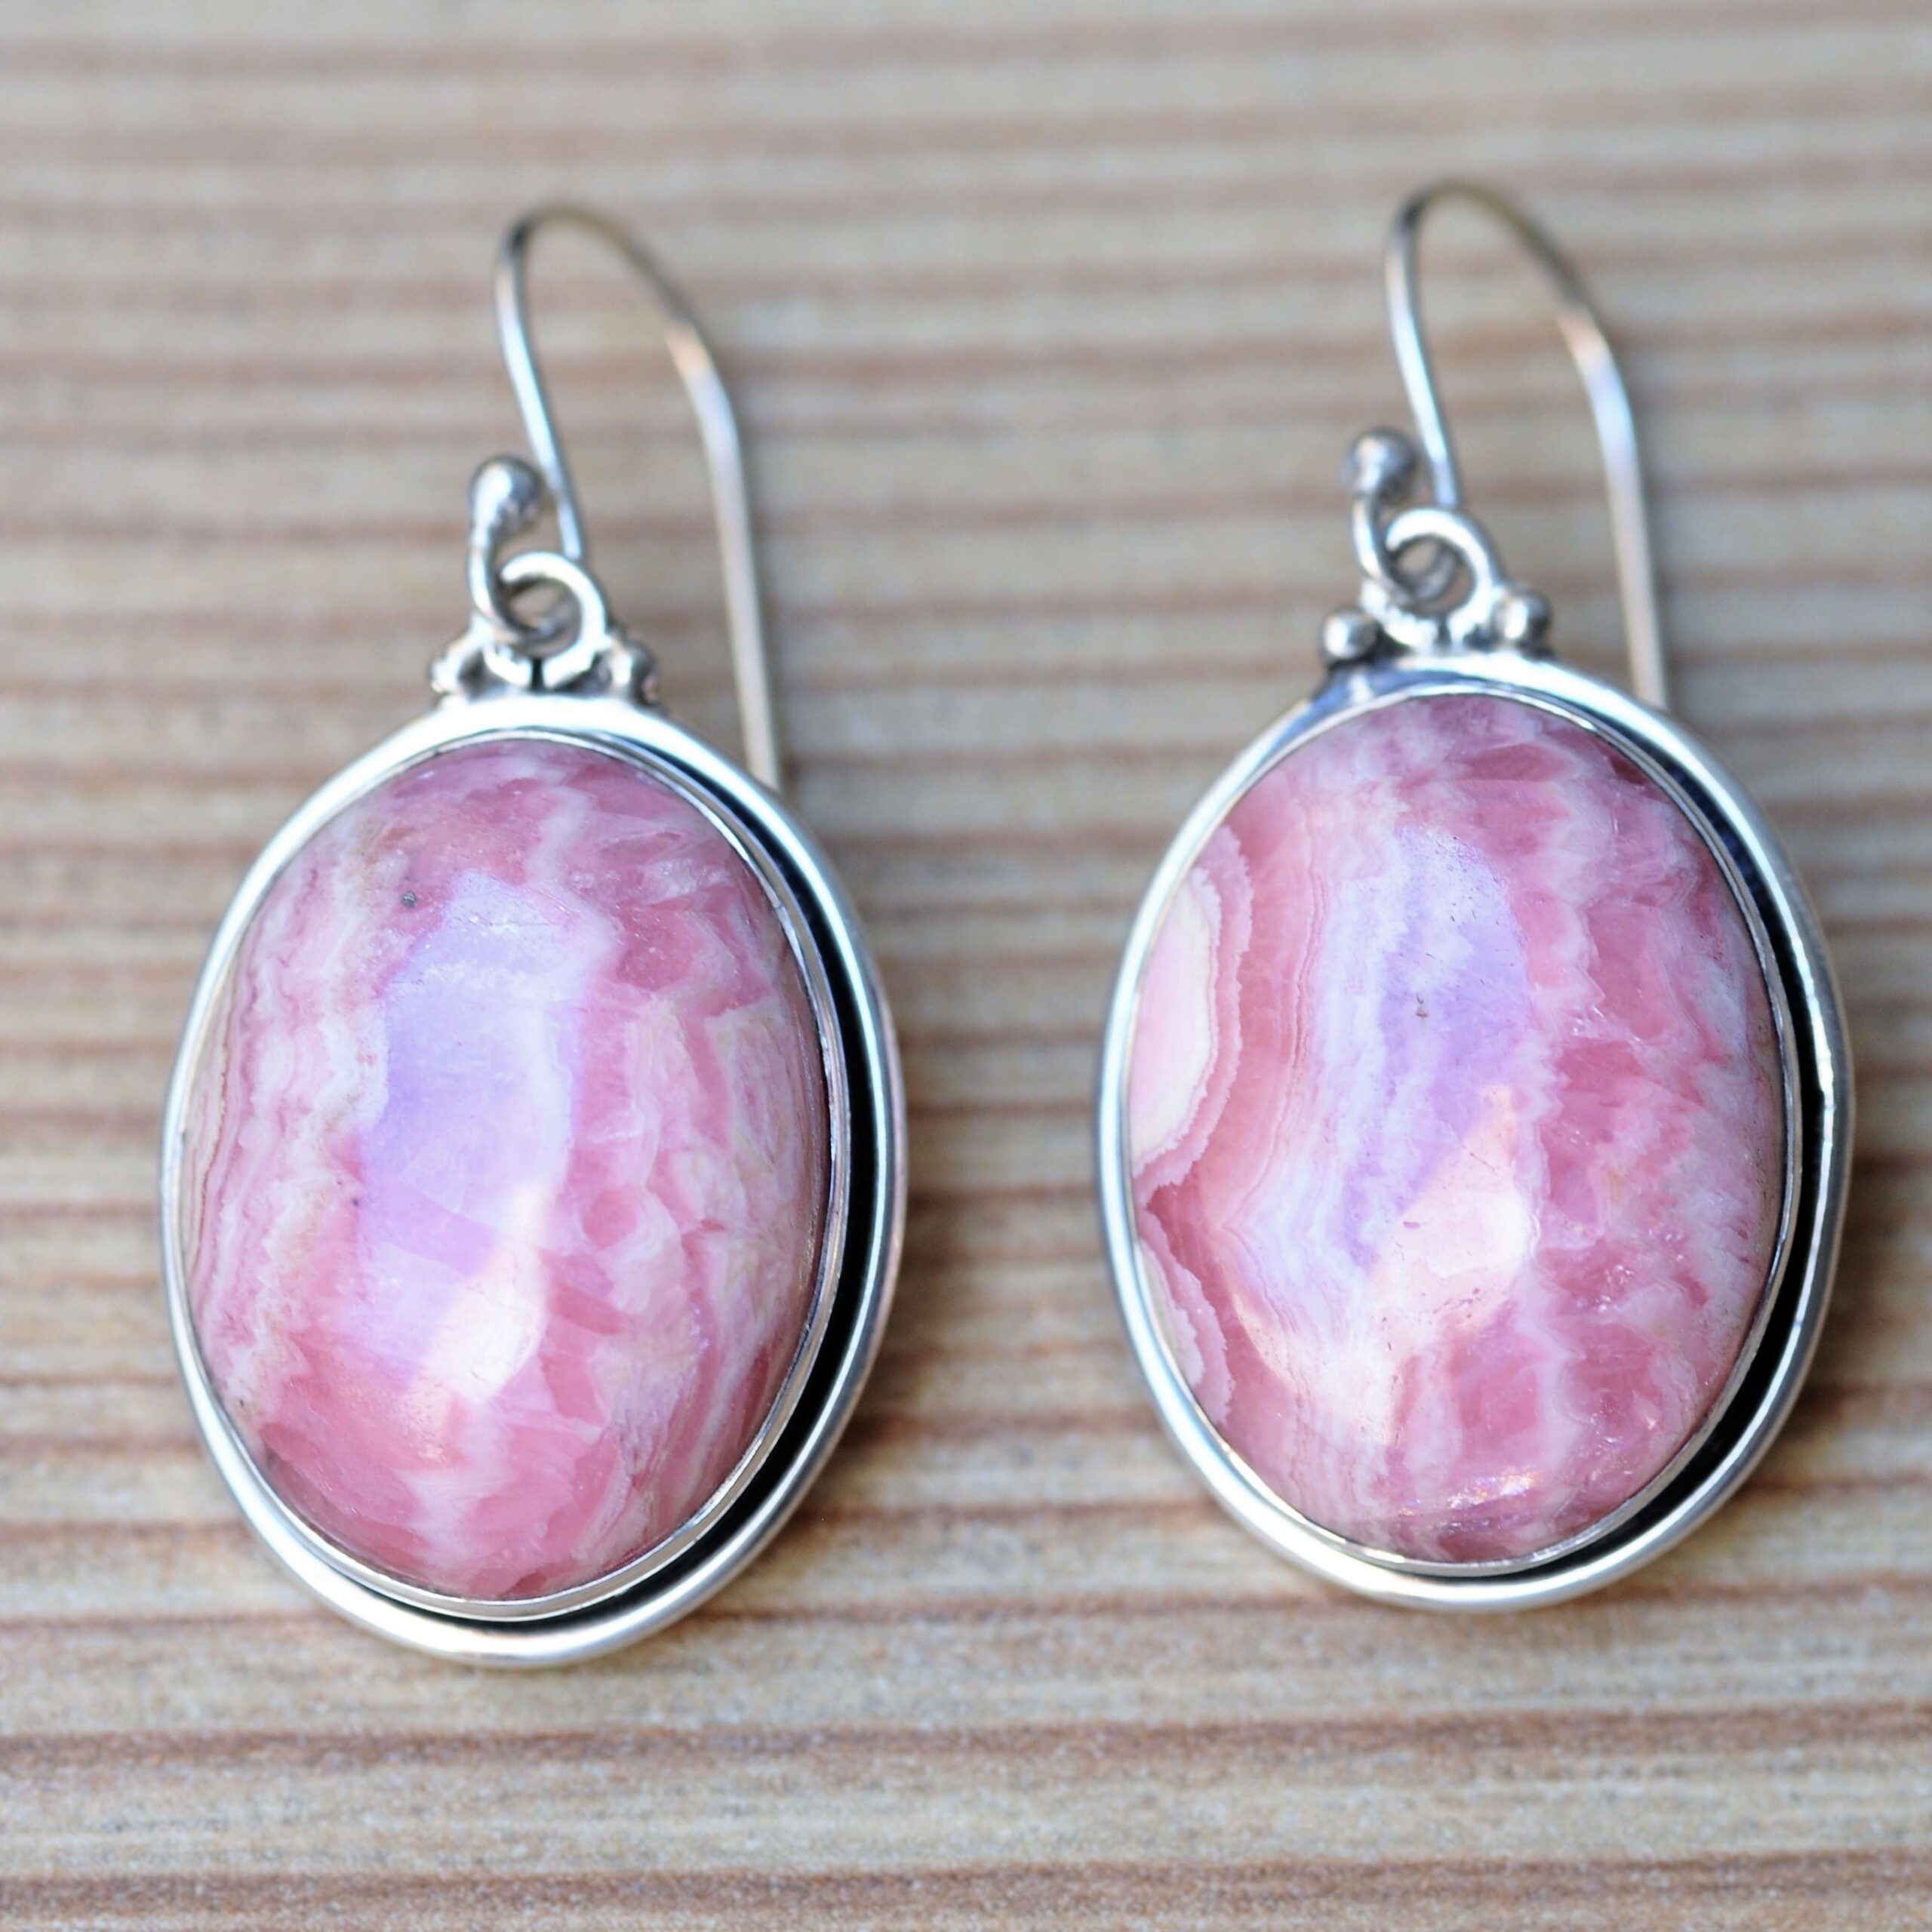 Grosses boucles d'oreilles argent avec une  pierre en rhodochrosite rose veinée